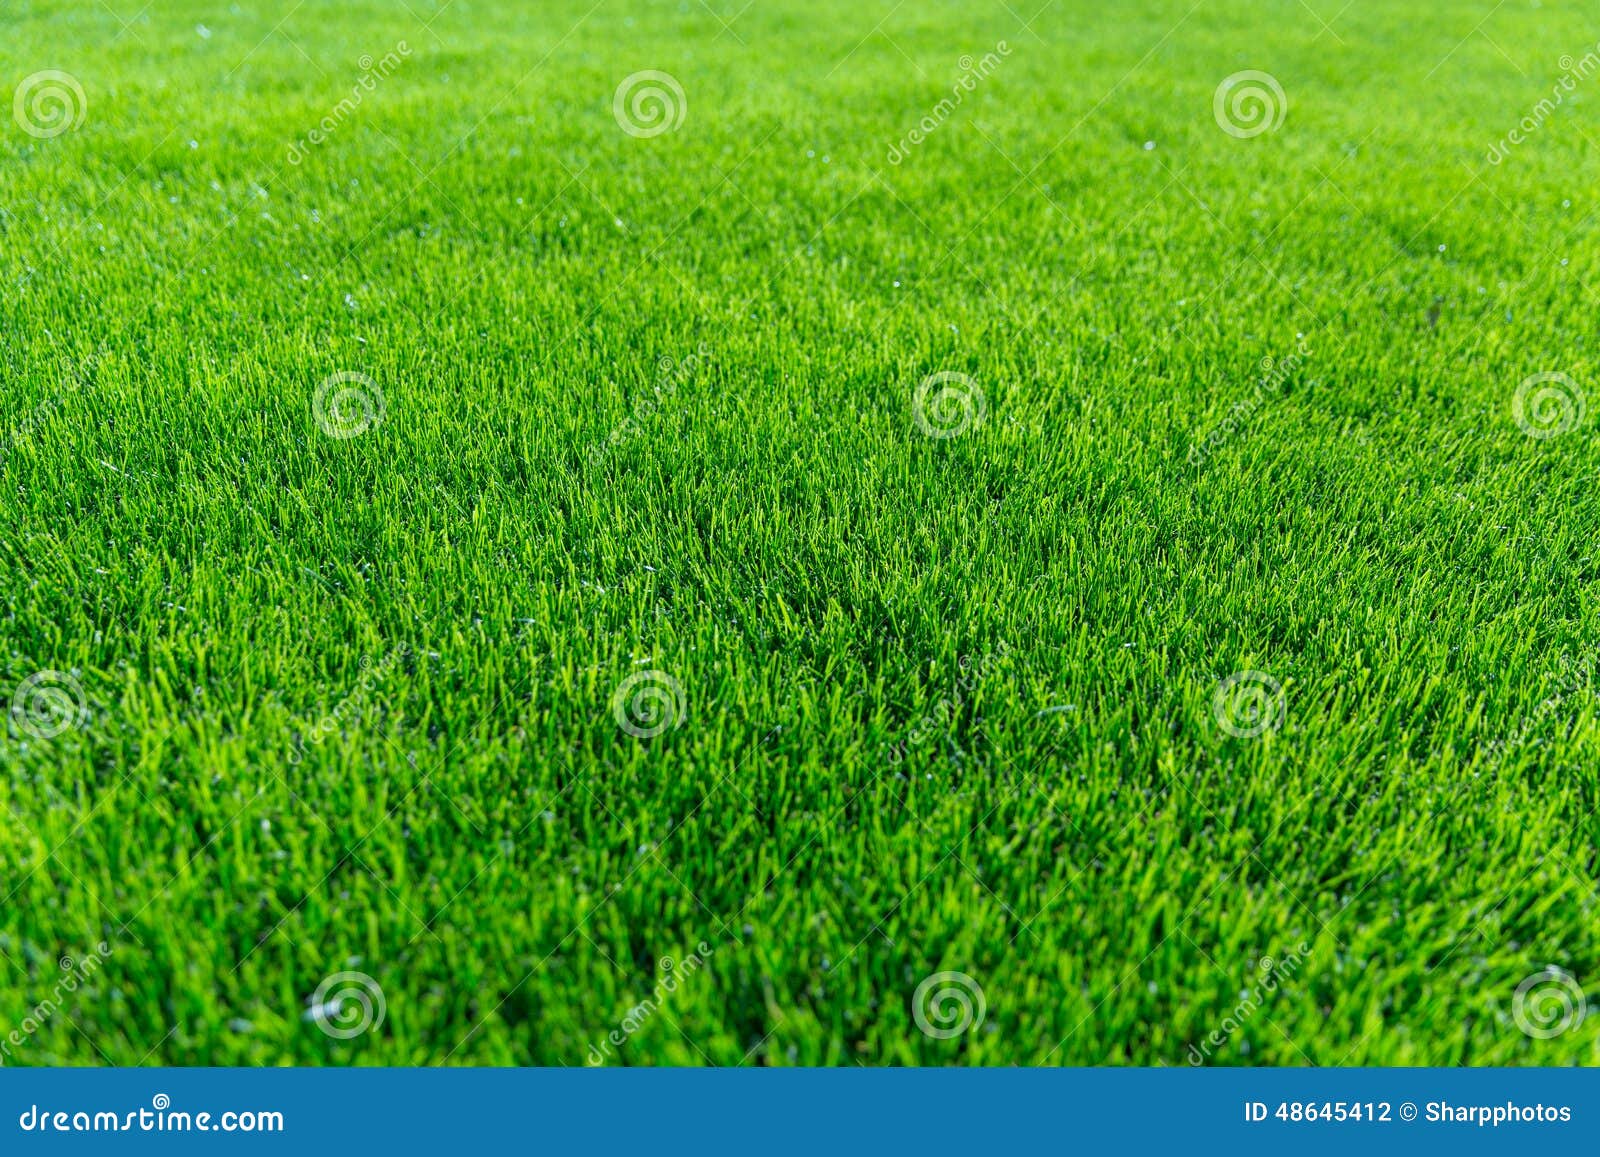 green grass background texture.